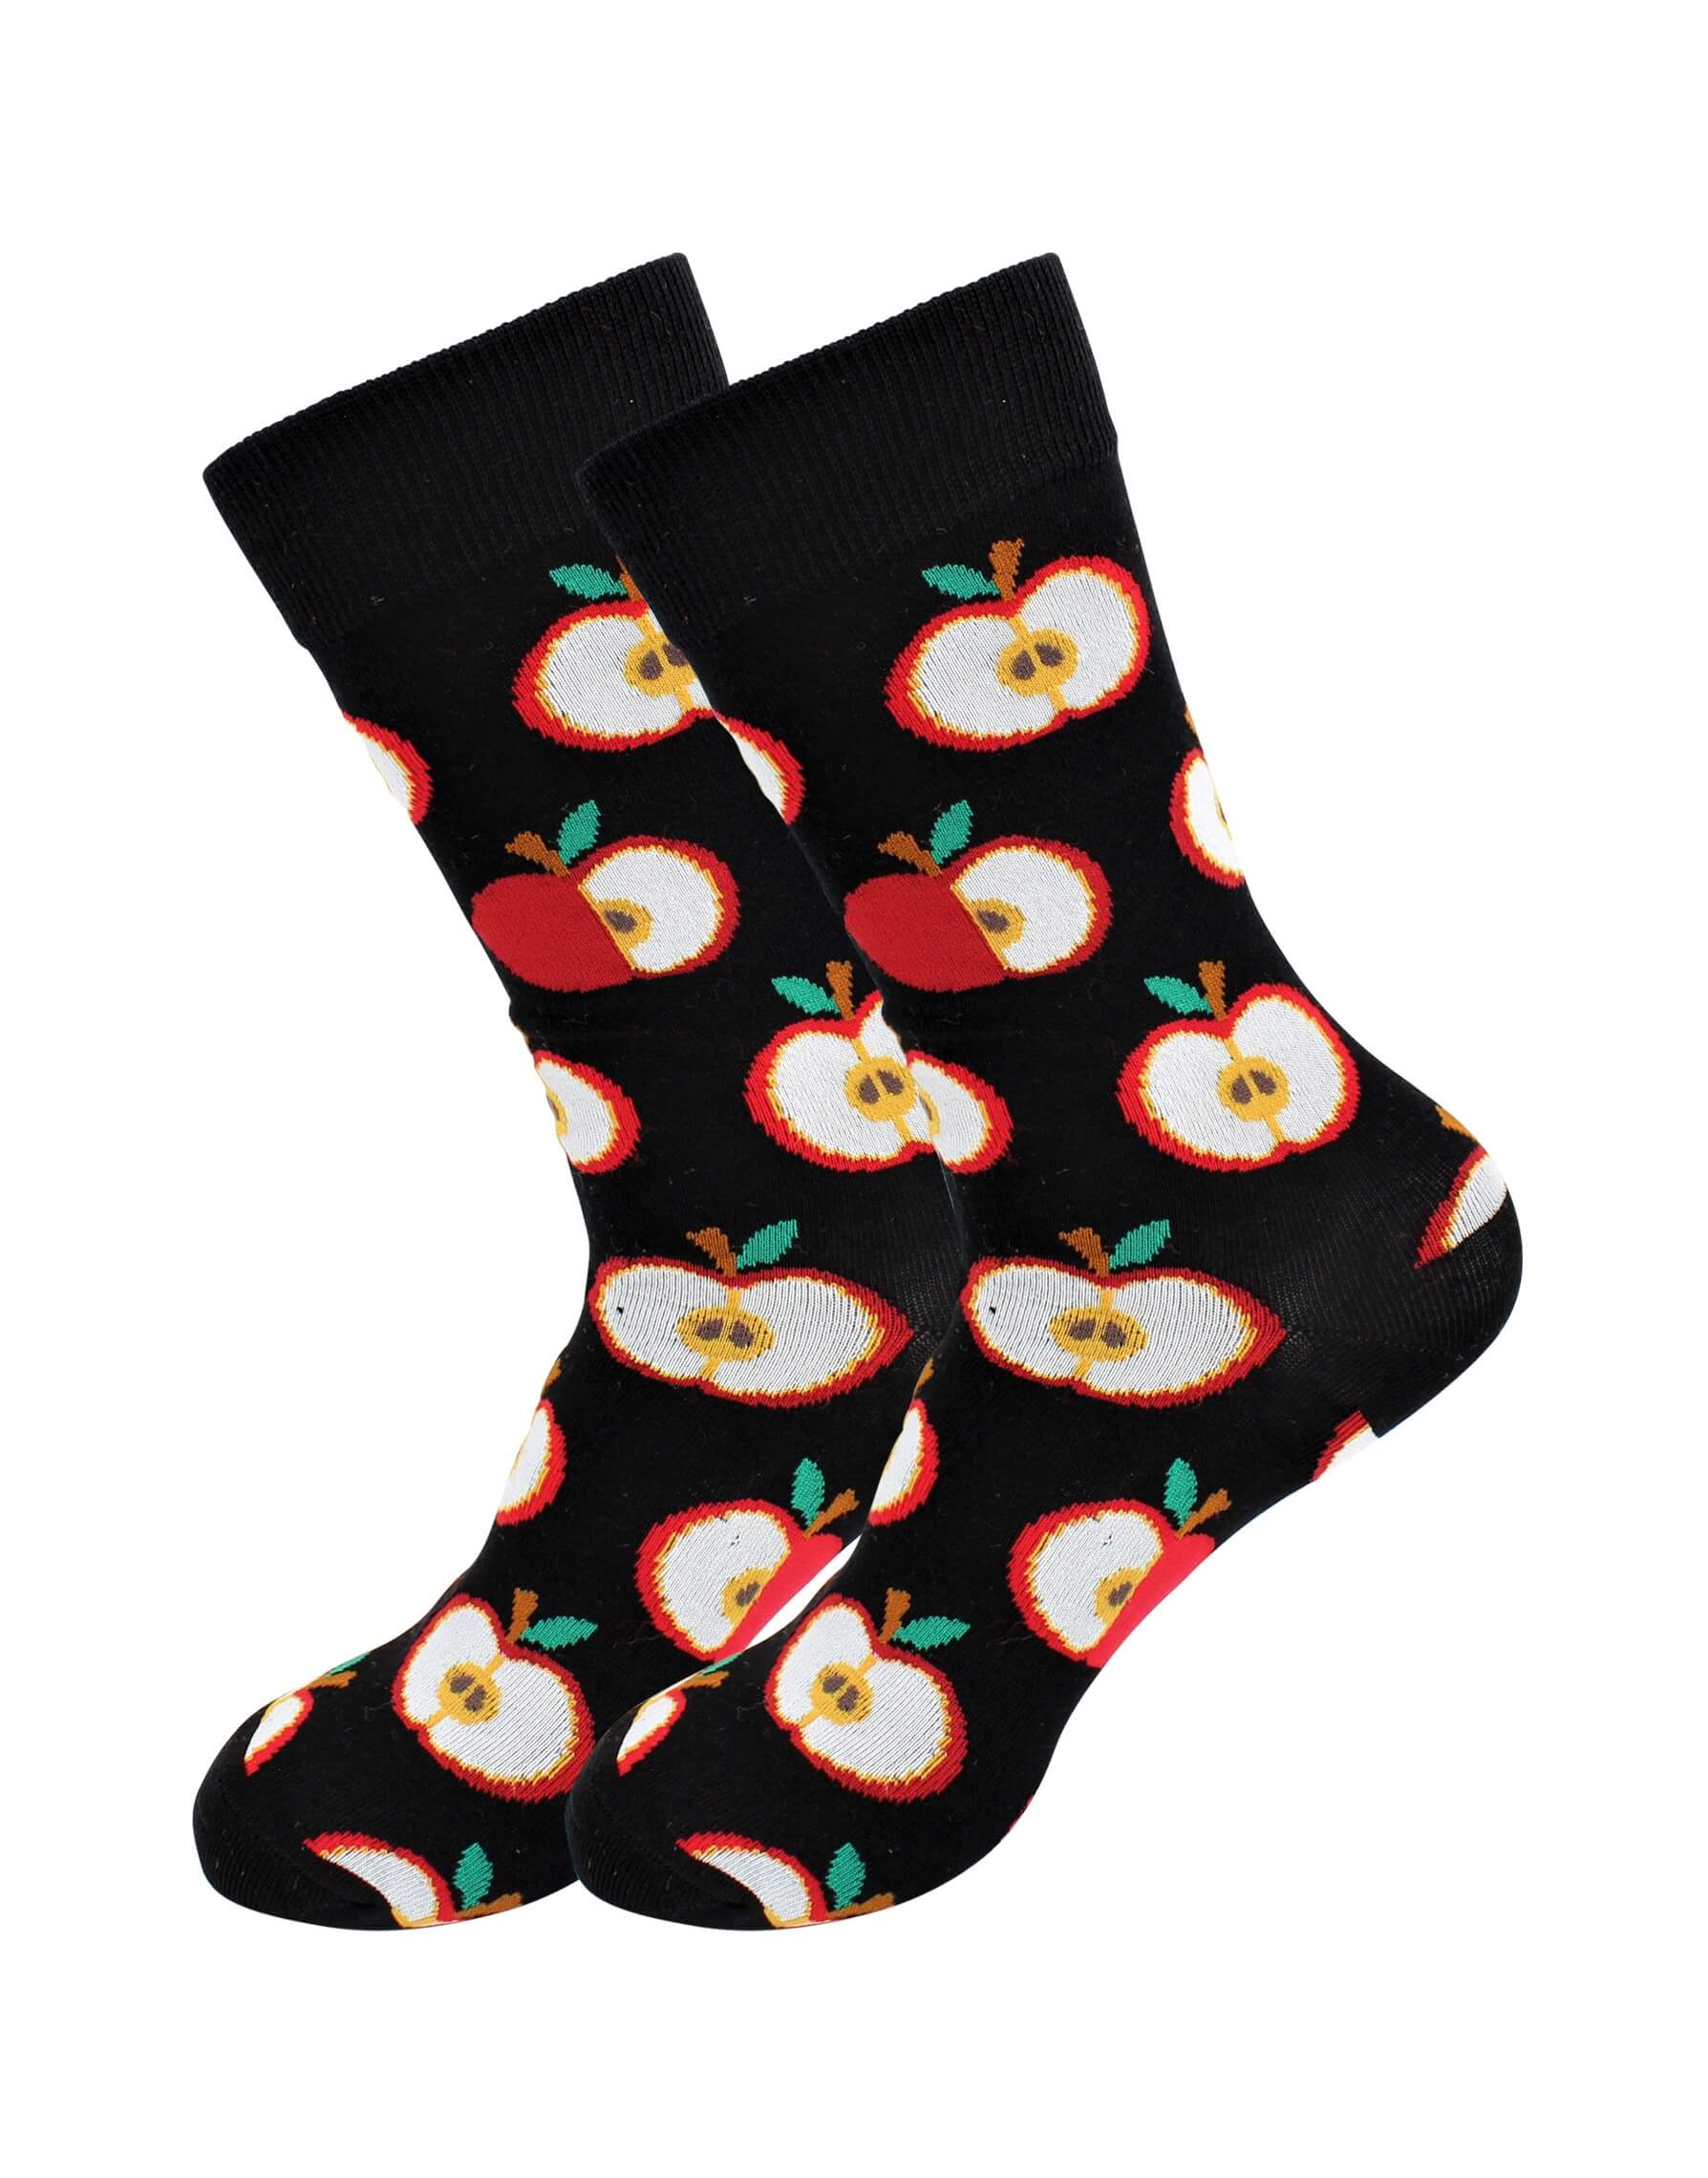 Real Sic - Apple Socks